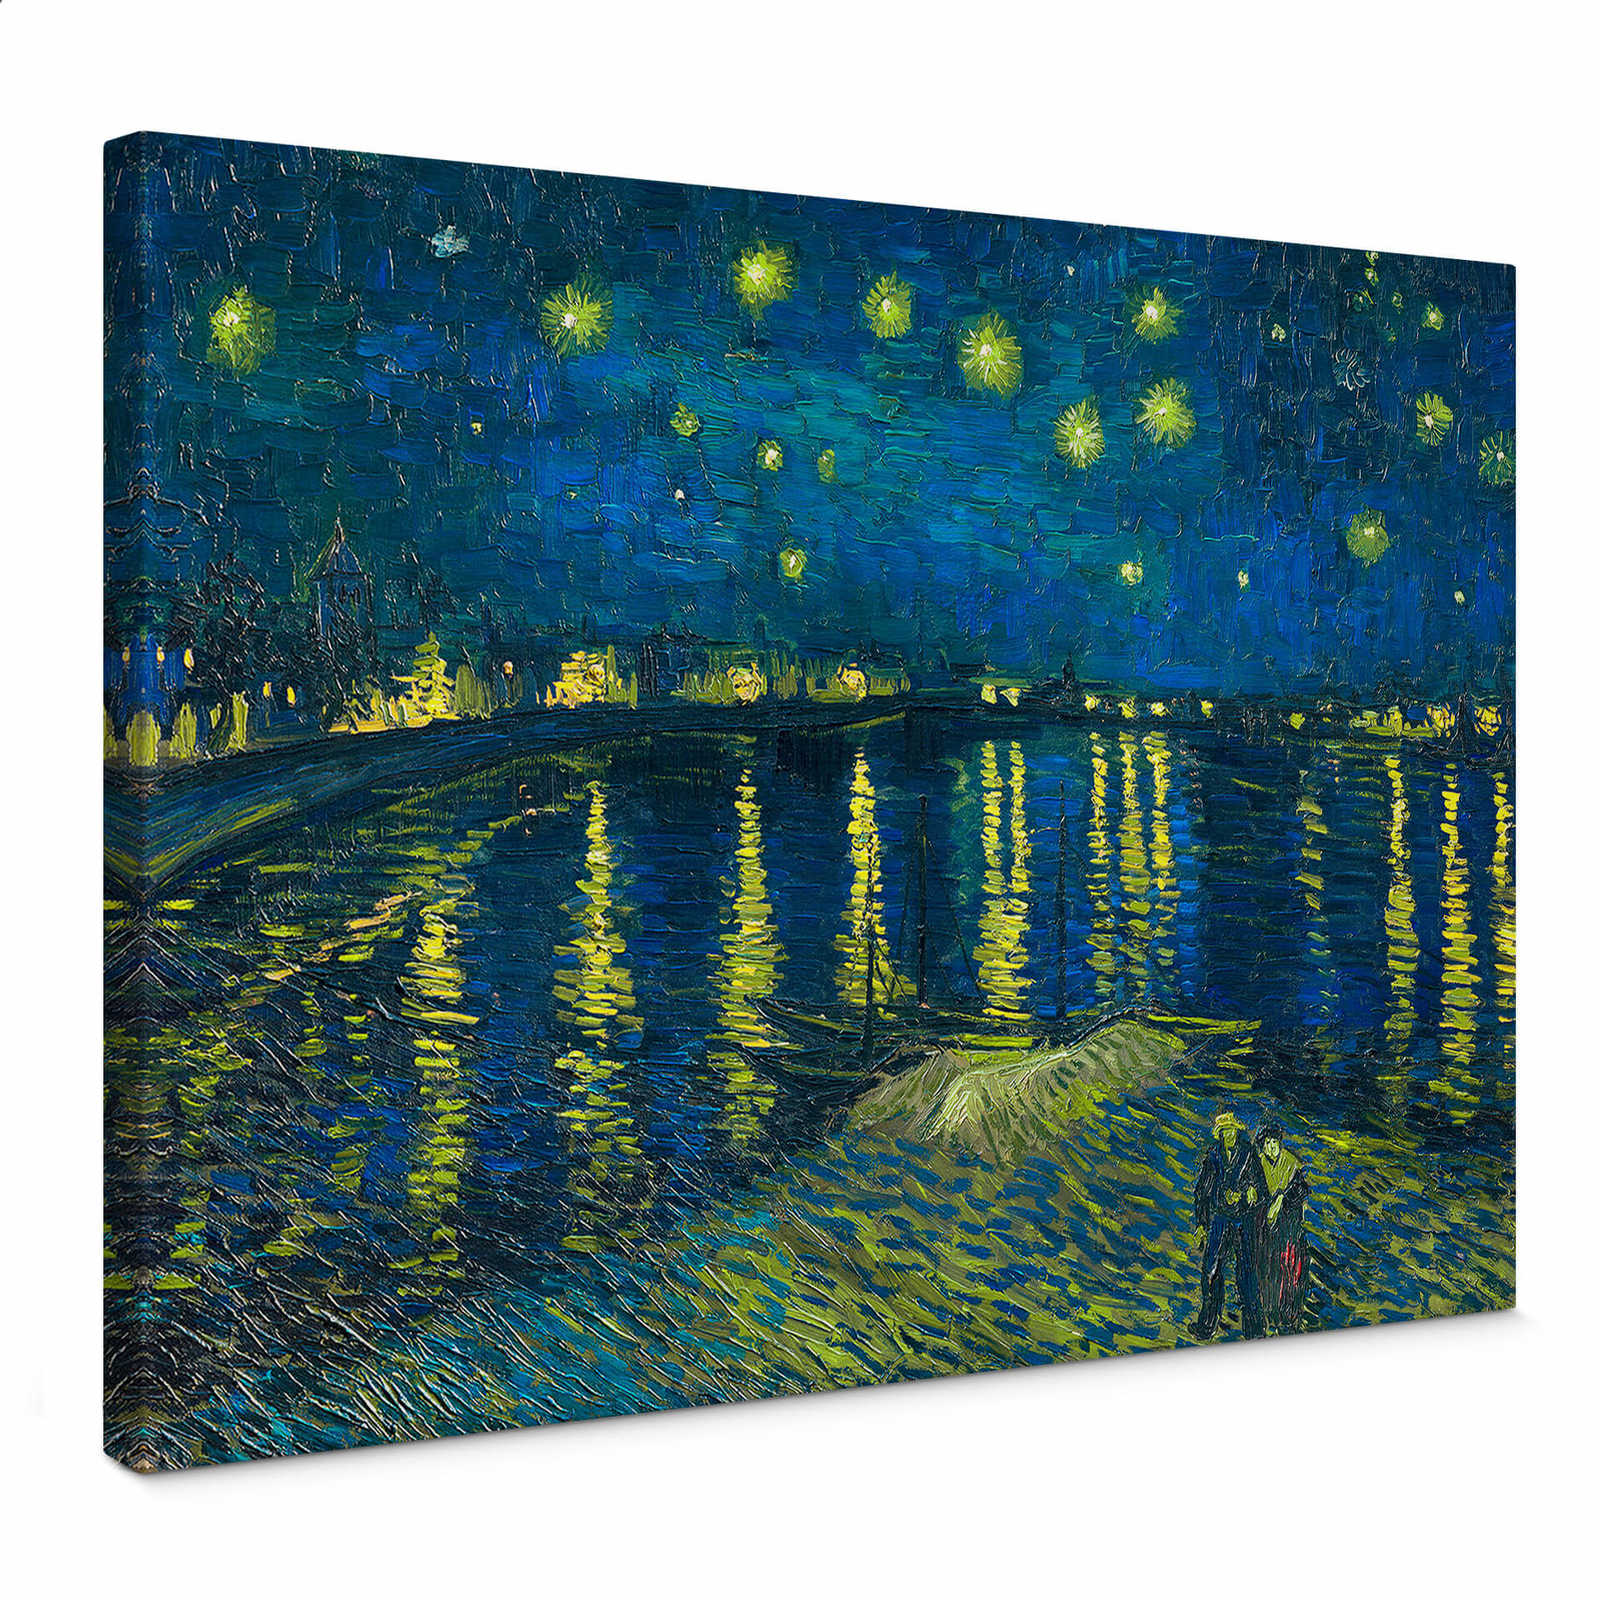 Leinwandbild "Sternennacht" von Van Gogh – 0,70 m x 0,50 m
